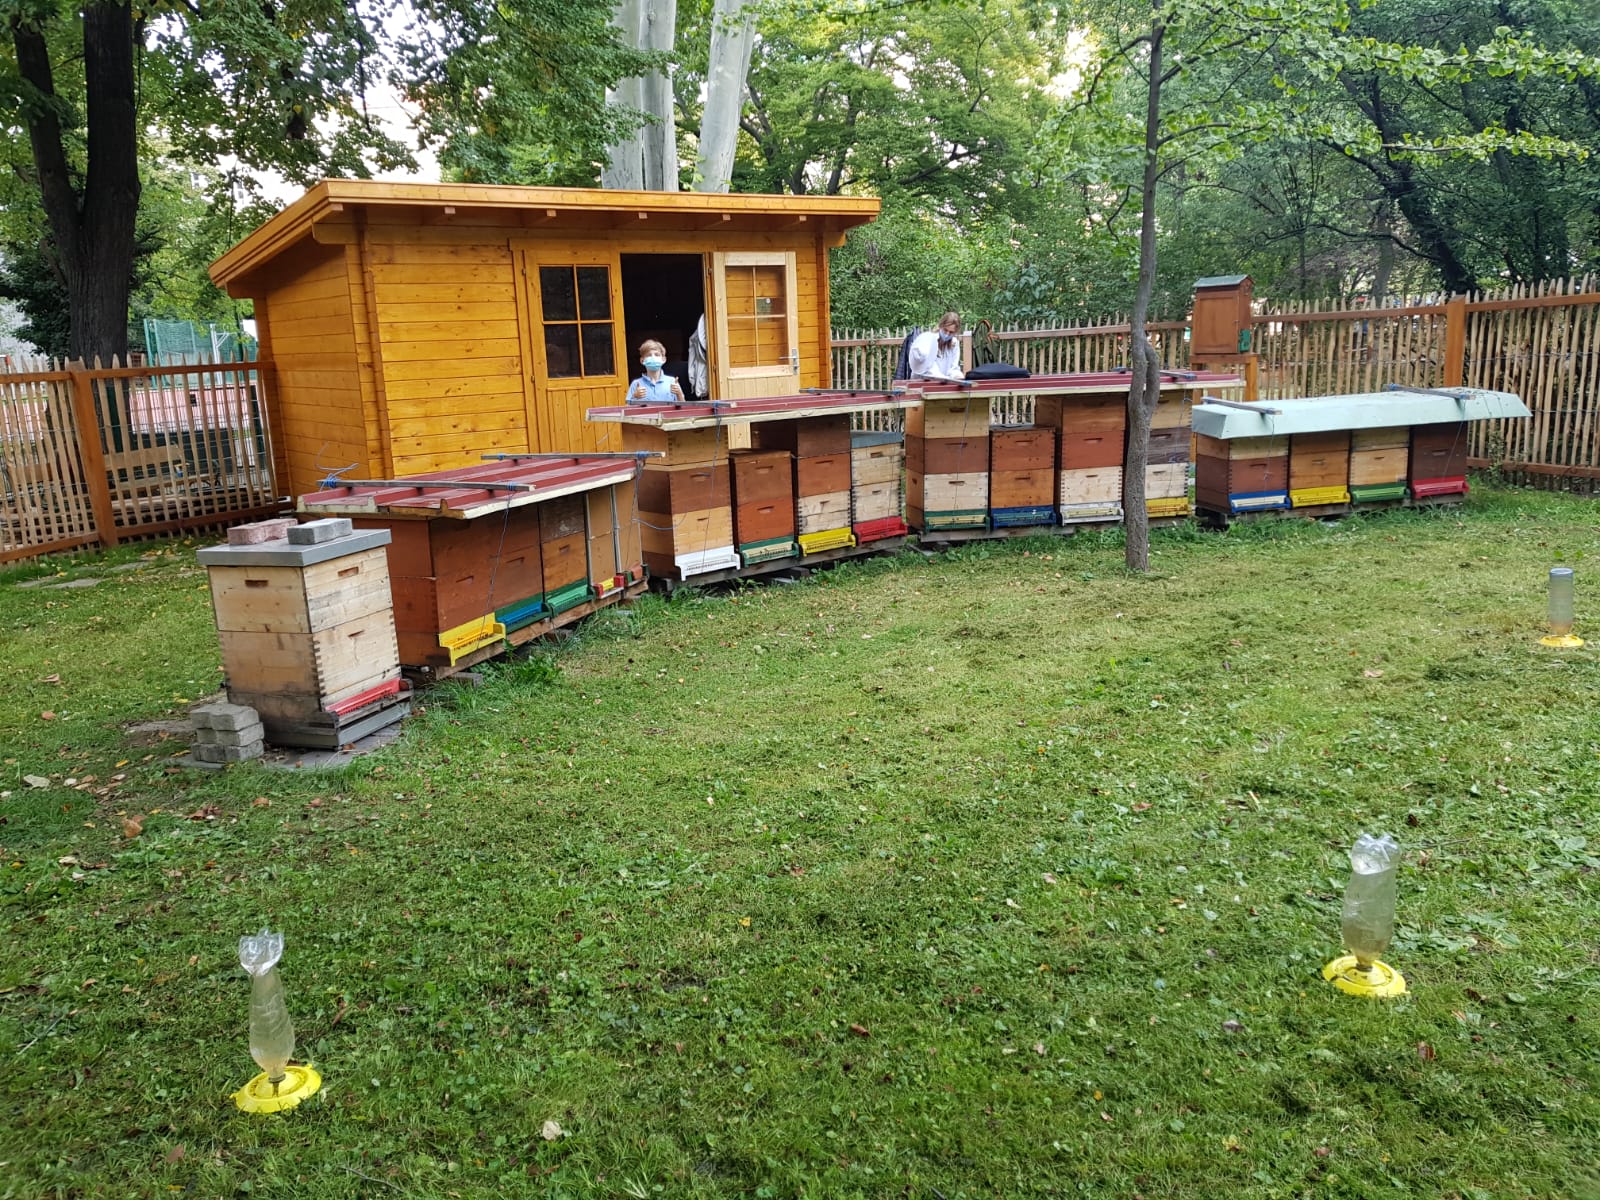 Gartenhütte mit Bienenstöcken davor